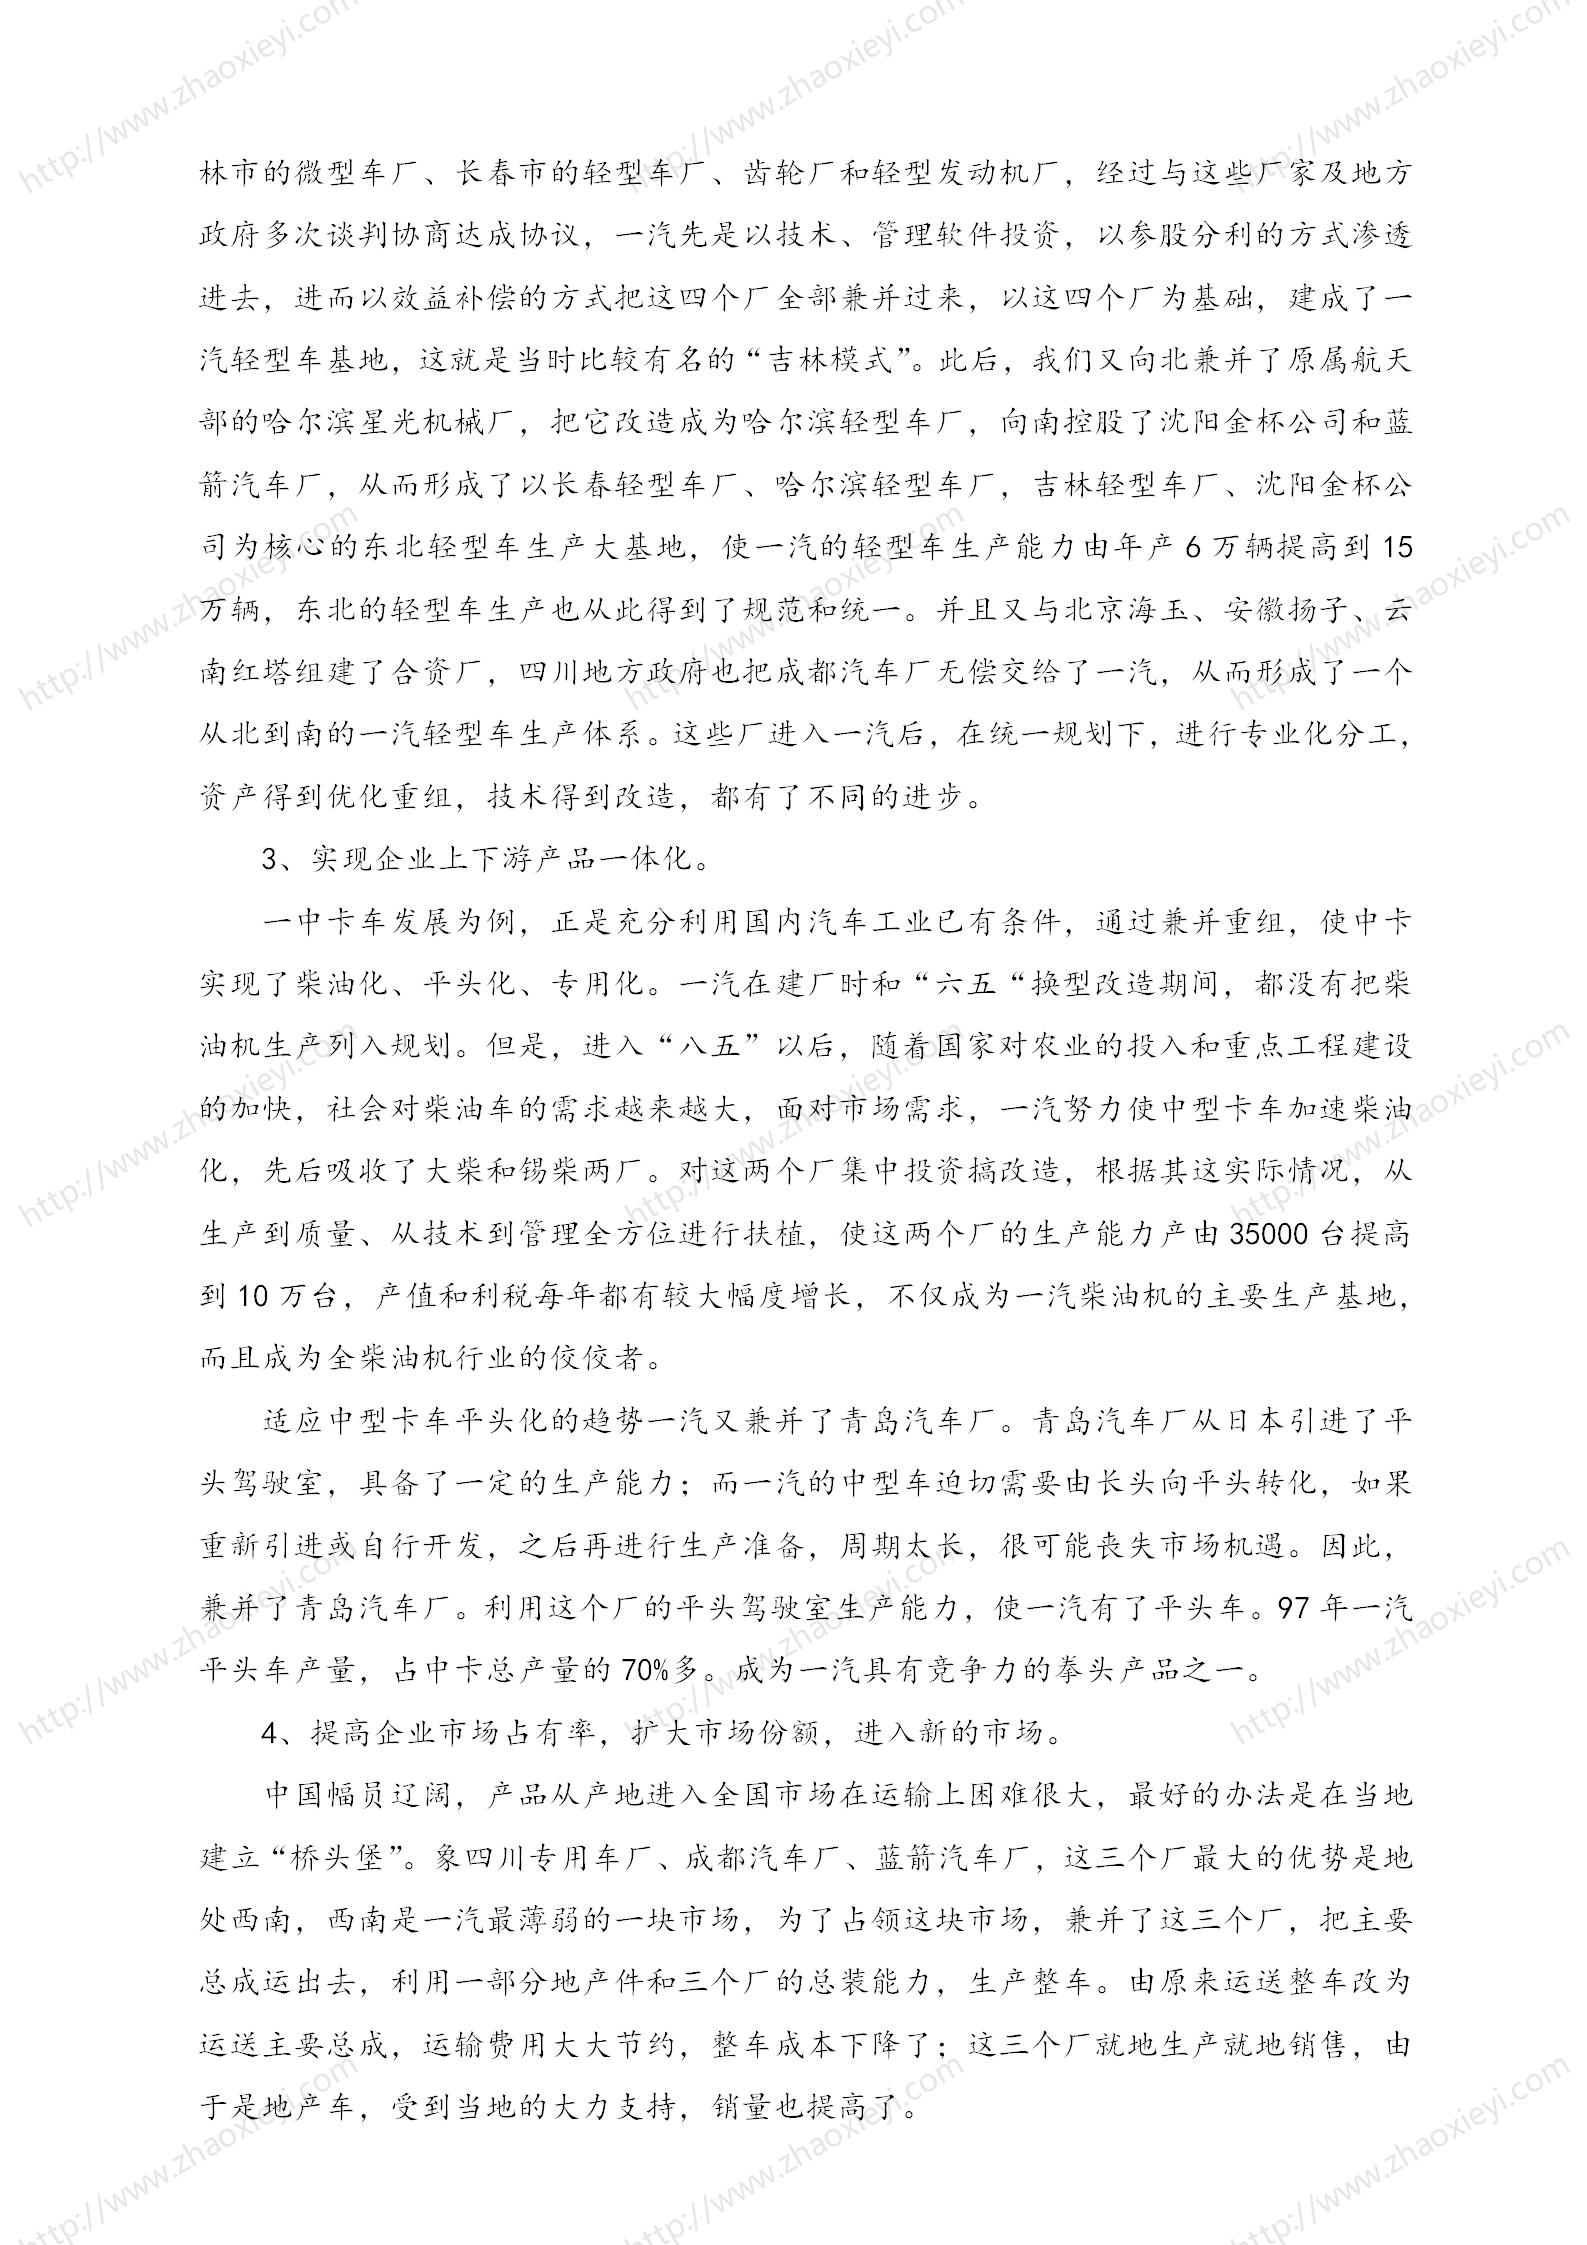 中国企业并购经典案例_168.jpg